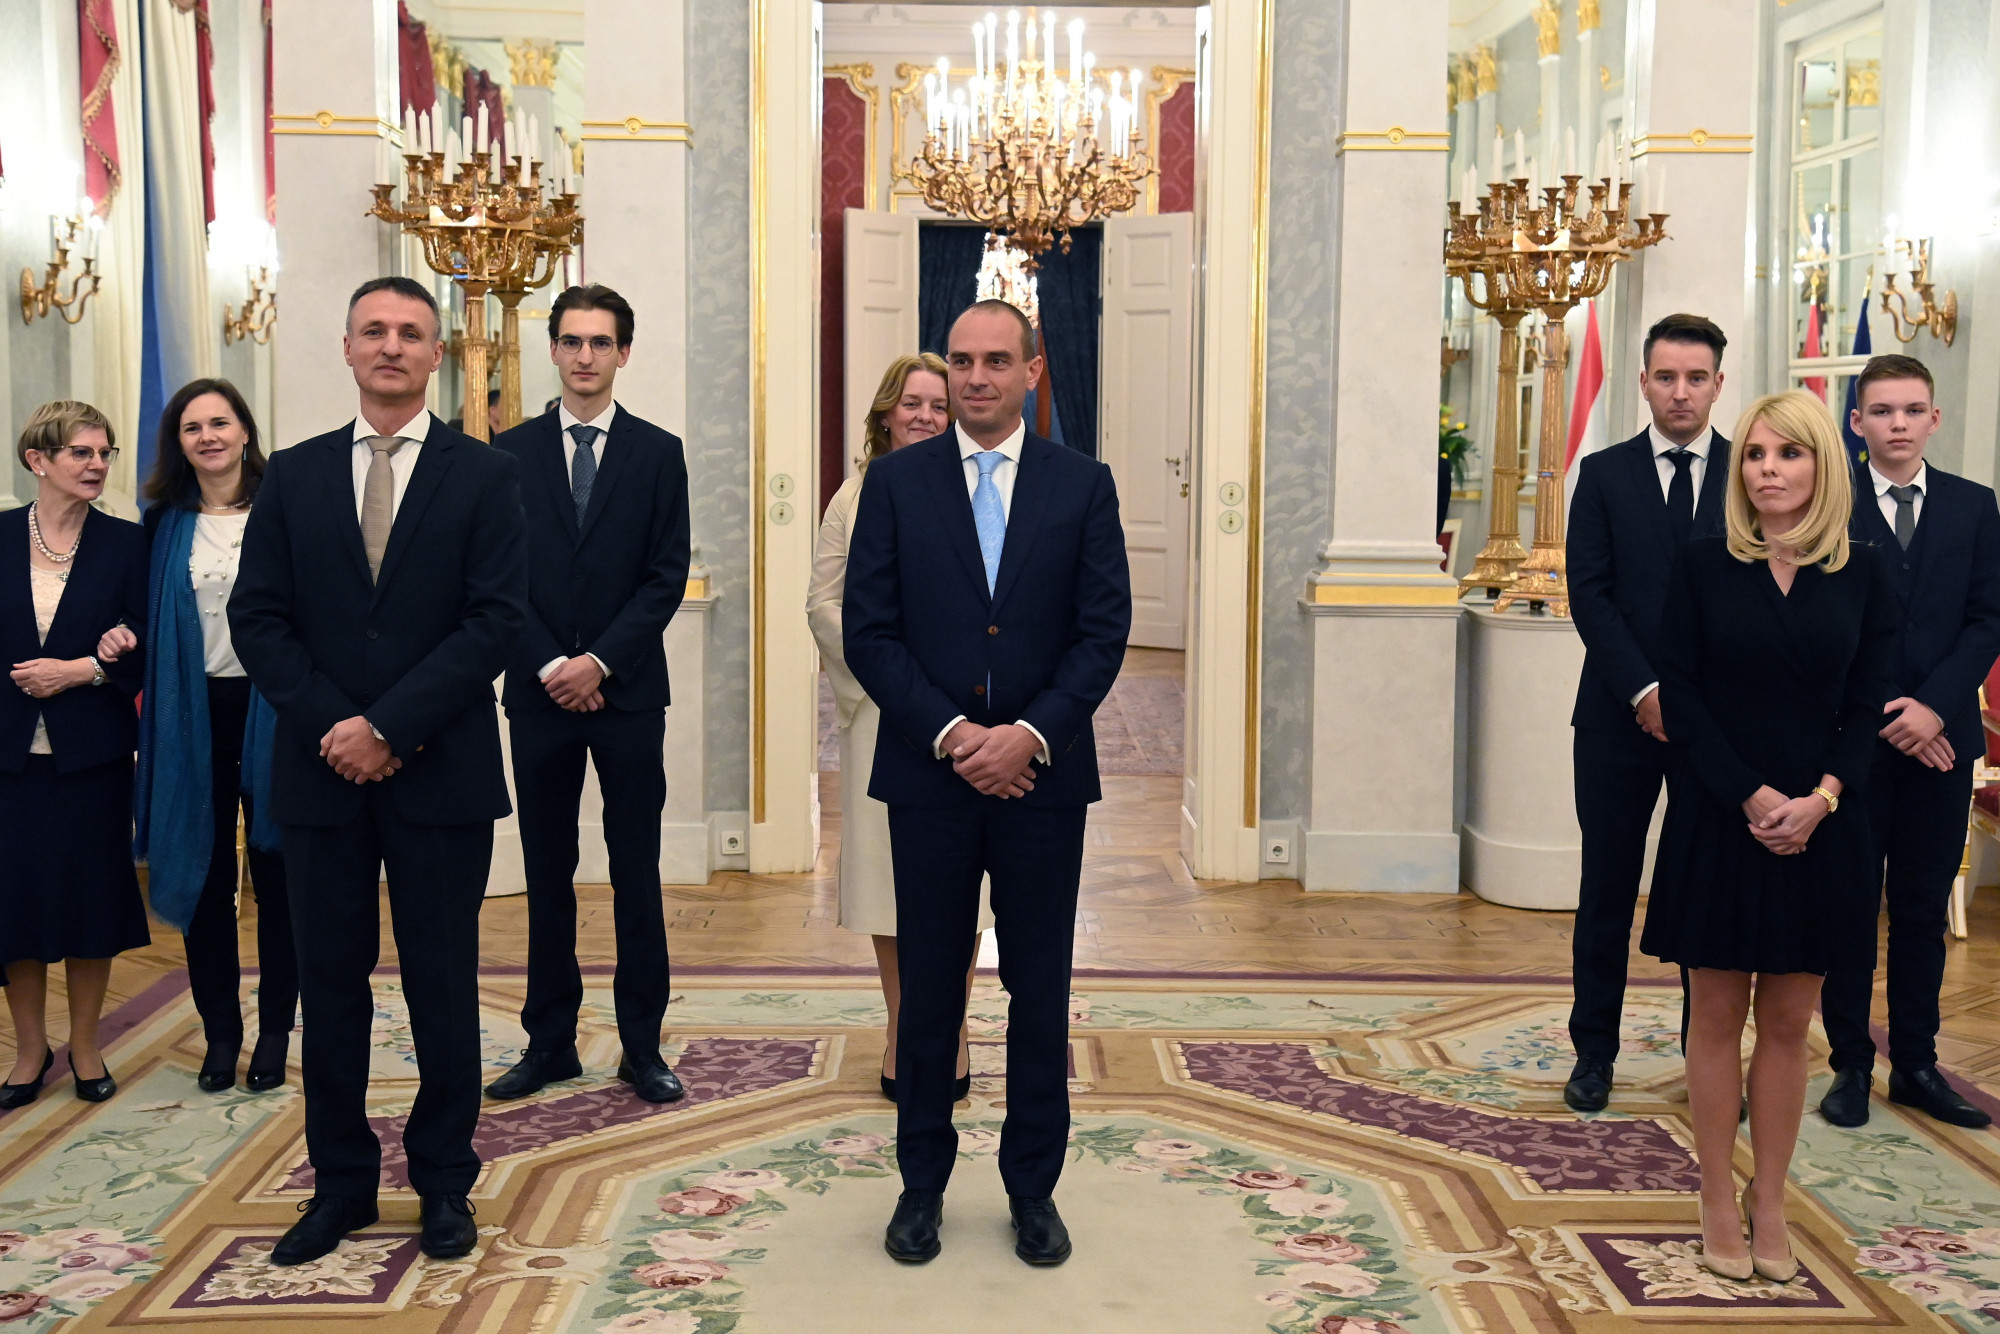 Dabóczi Kálmán alelnök (b), Bíró Ferenc elnök (k) és Molbusz Tímea alelnök (j) az Integritás Hatóság vezetőinek kinevezésén a Sándor-palota Tükörtermében